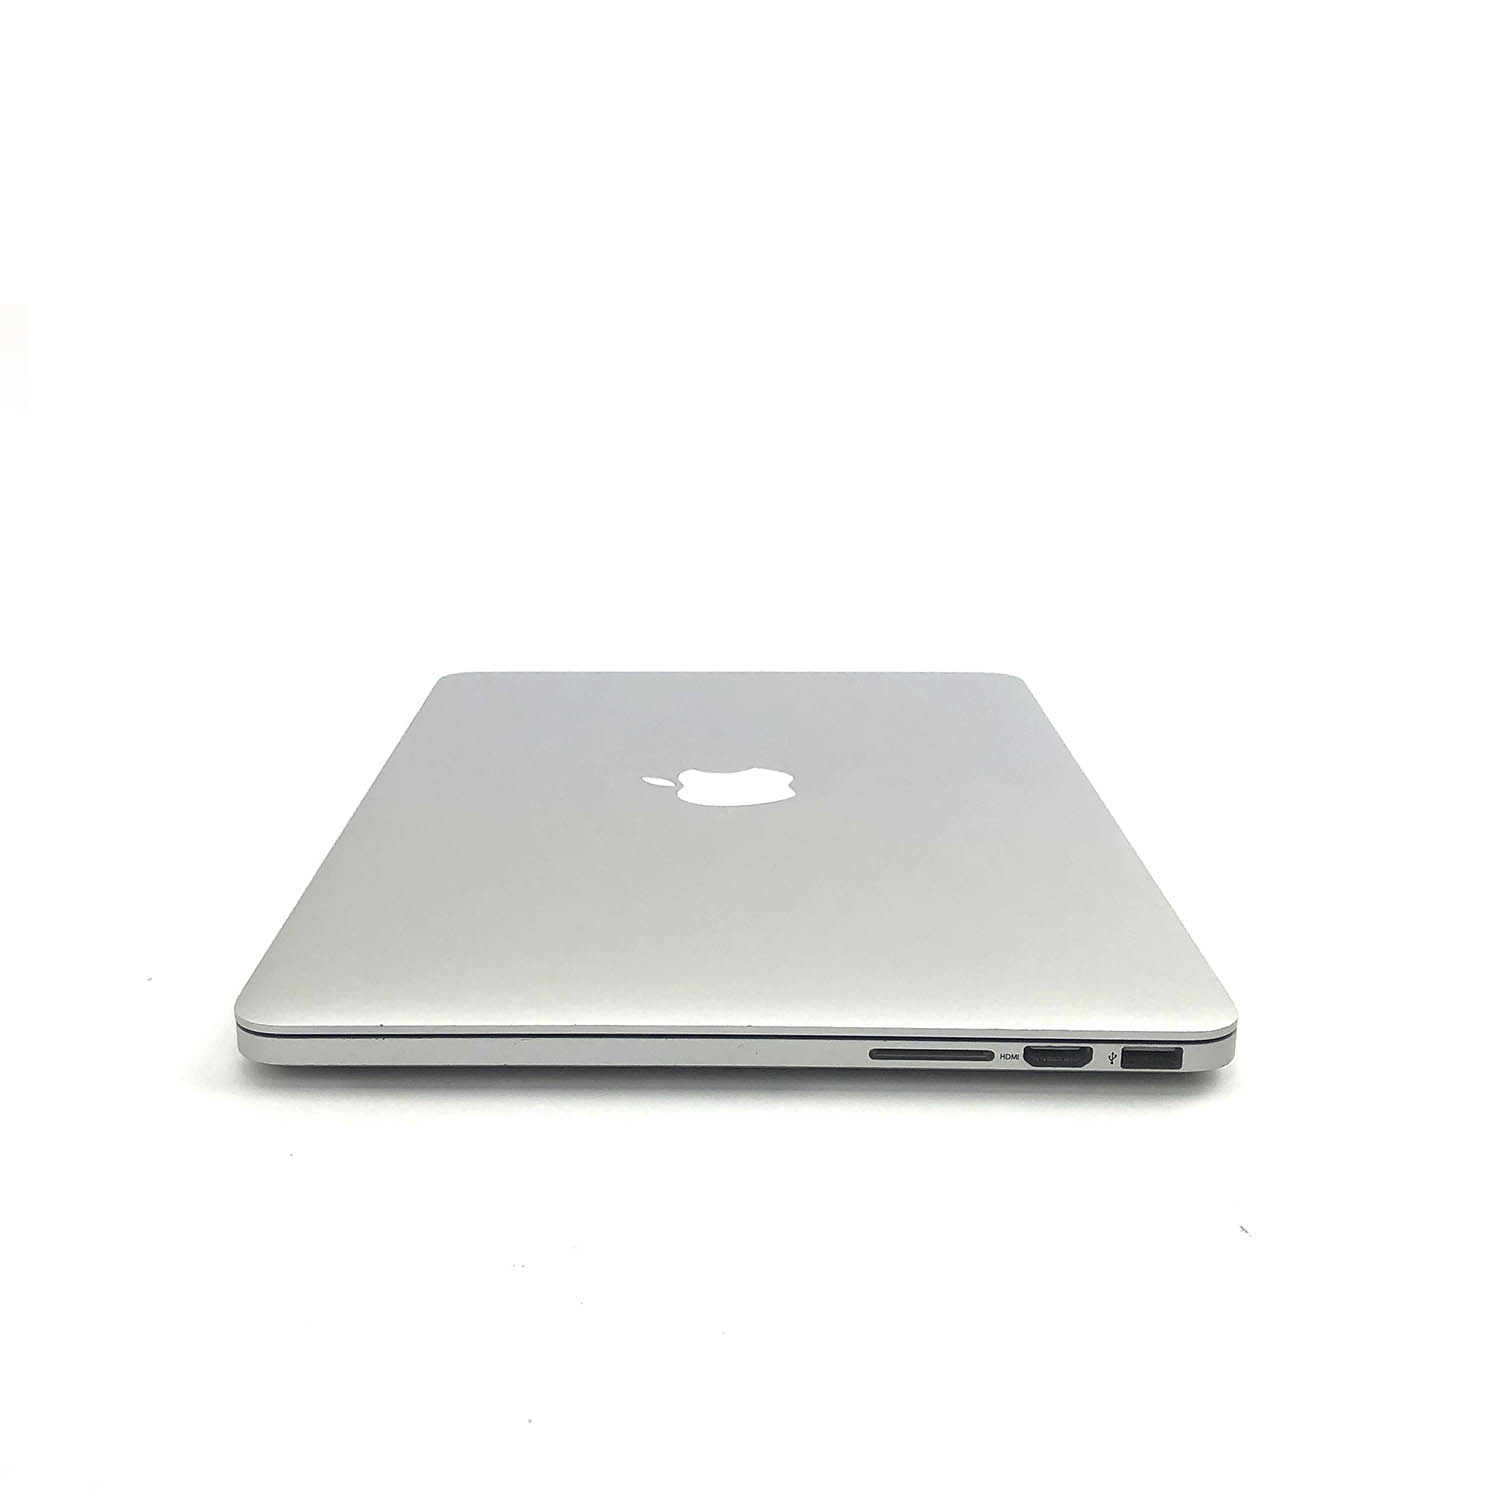 Macbook Pro Retina 13 i5 2.6Ghz 8GB 256GB SSD MGX72LL/A Seminovo